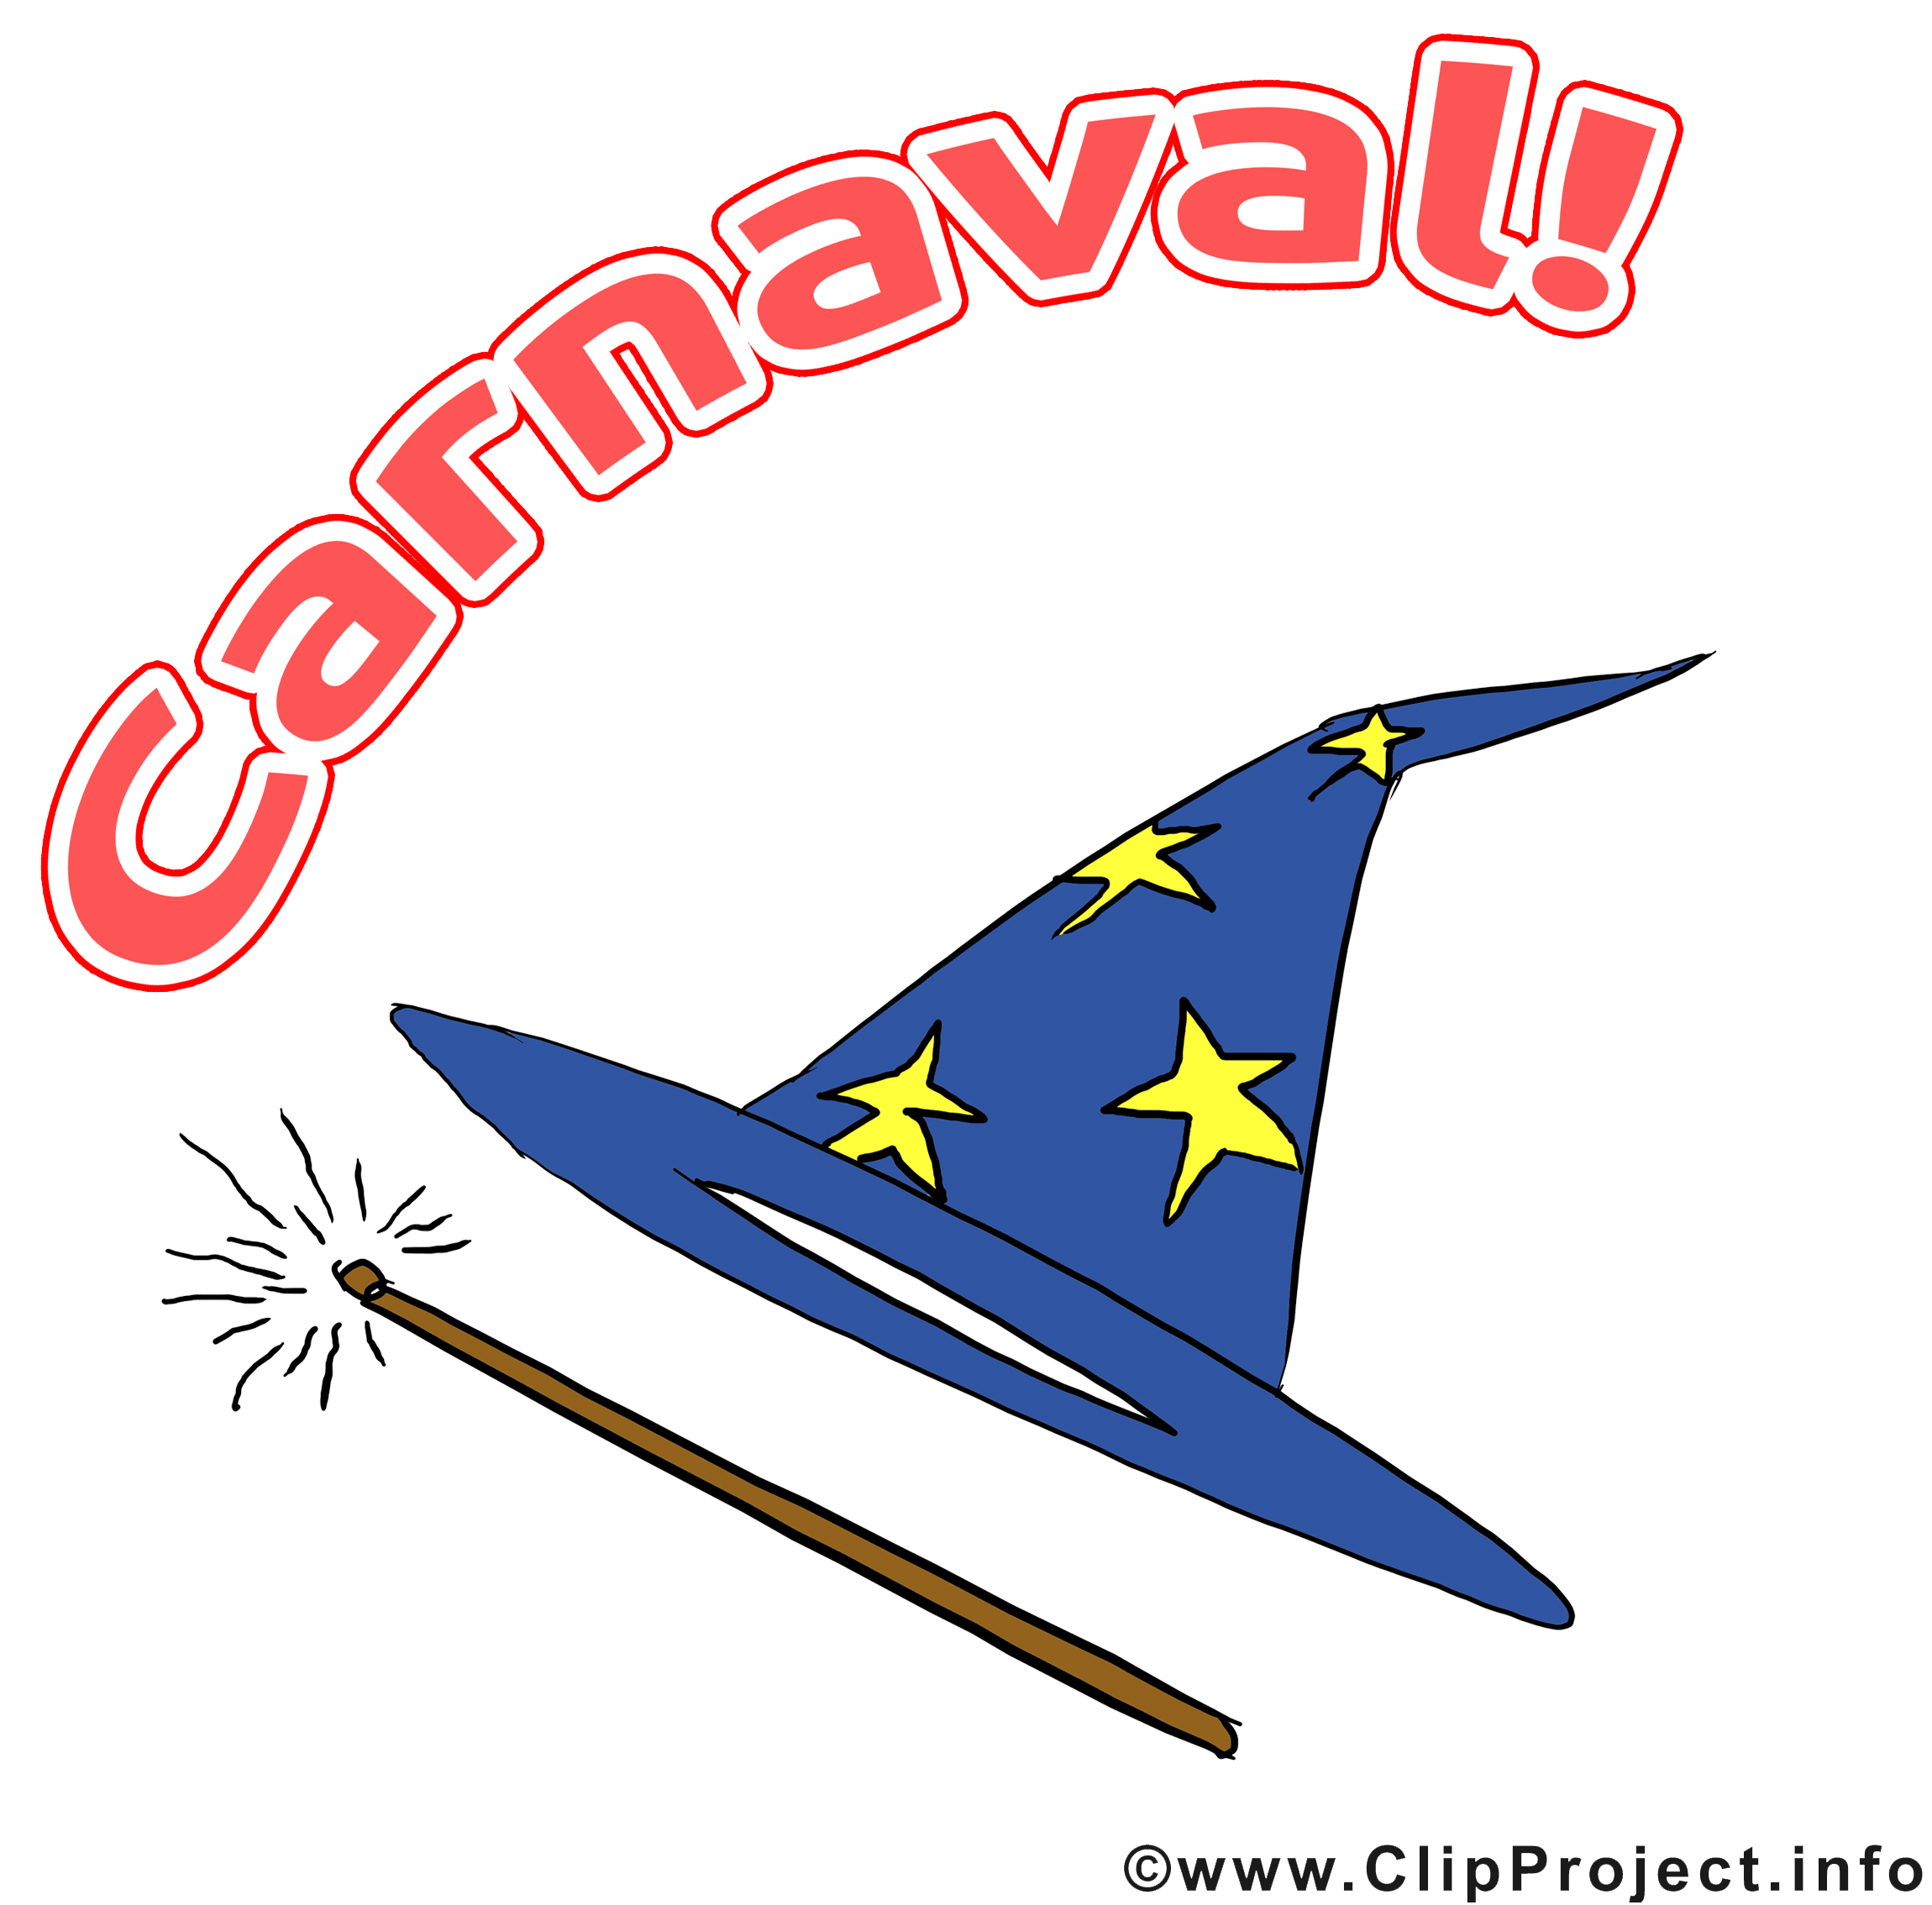 Magicien images gratuites – Carnaval clipart